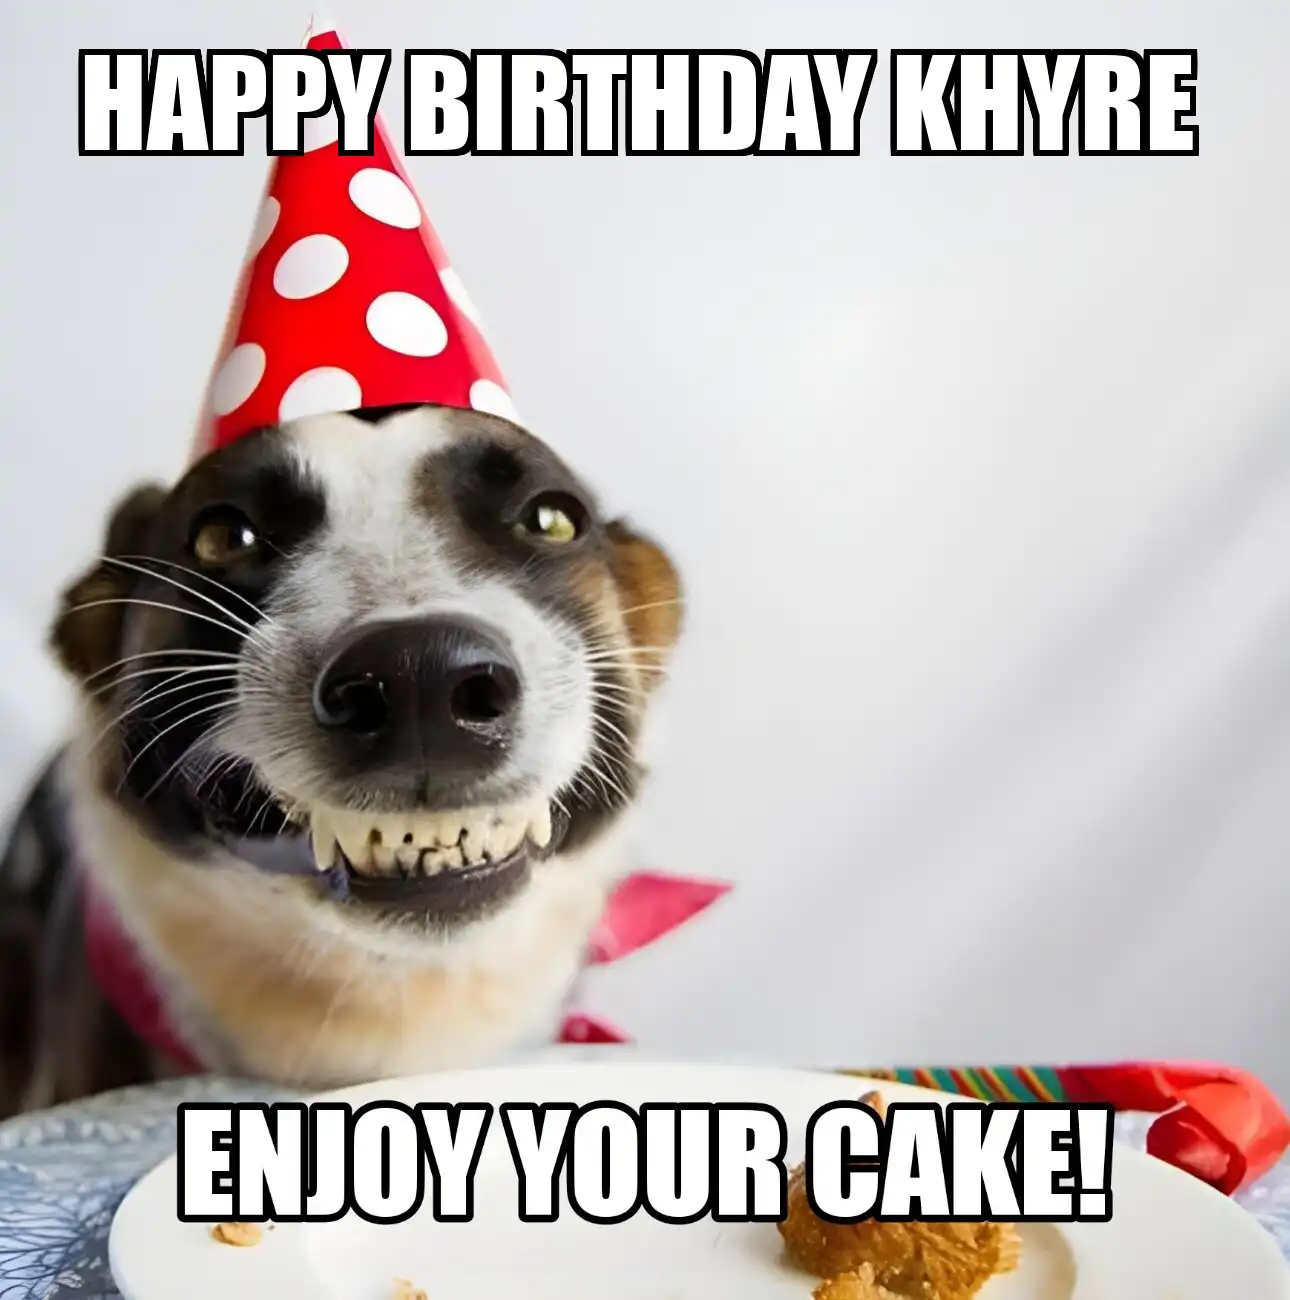 Happy Birthday Khyre Enjoy Your Cake Dog Meme